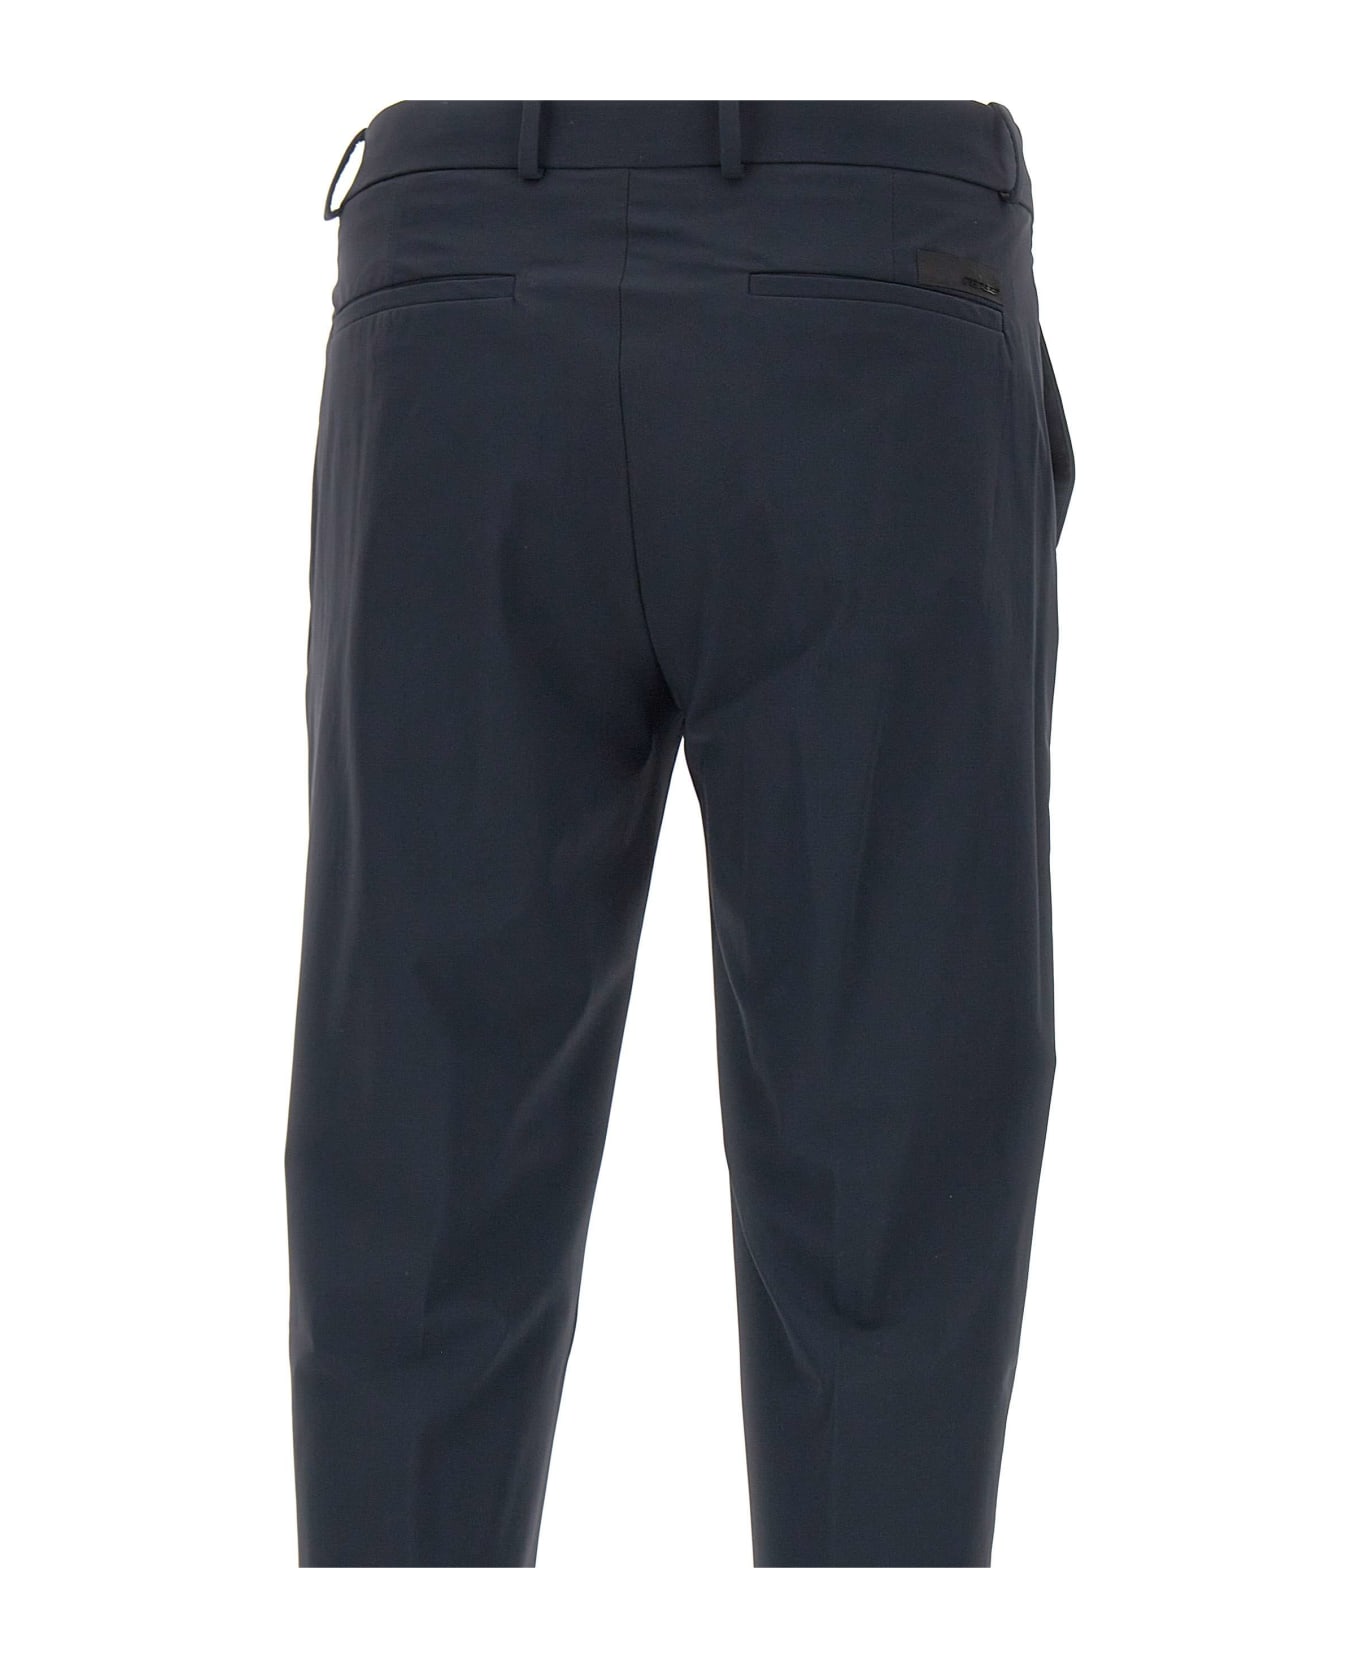 RRD - Roberto Ricci Design Men's Trousers 'revo Chino' RRD - Roberto Ricci Design